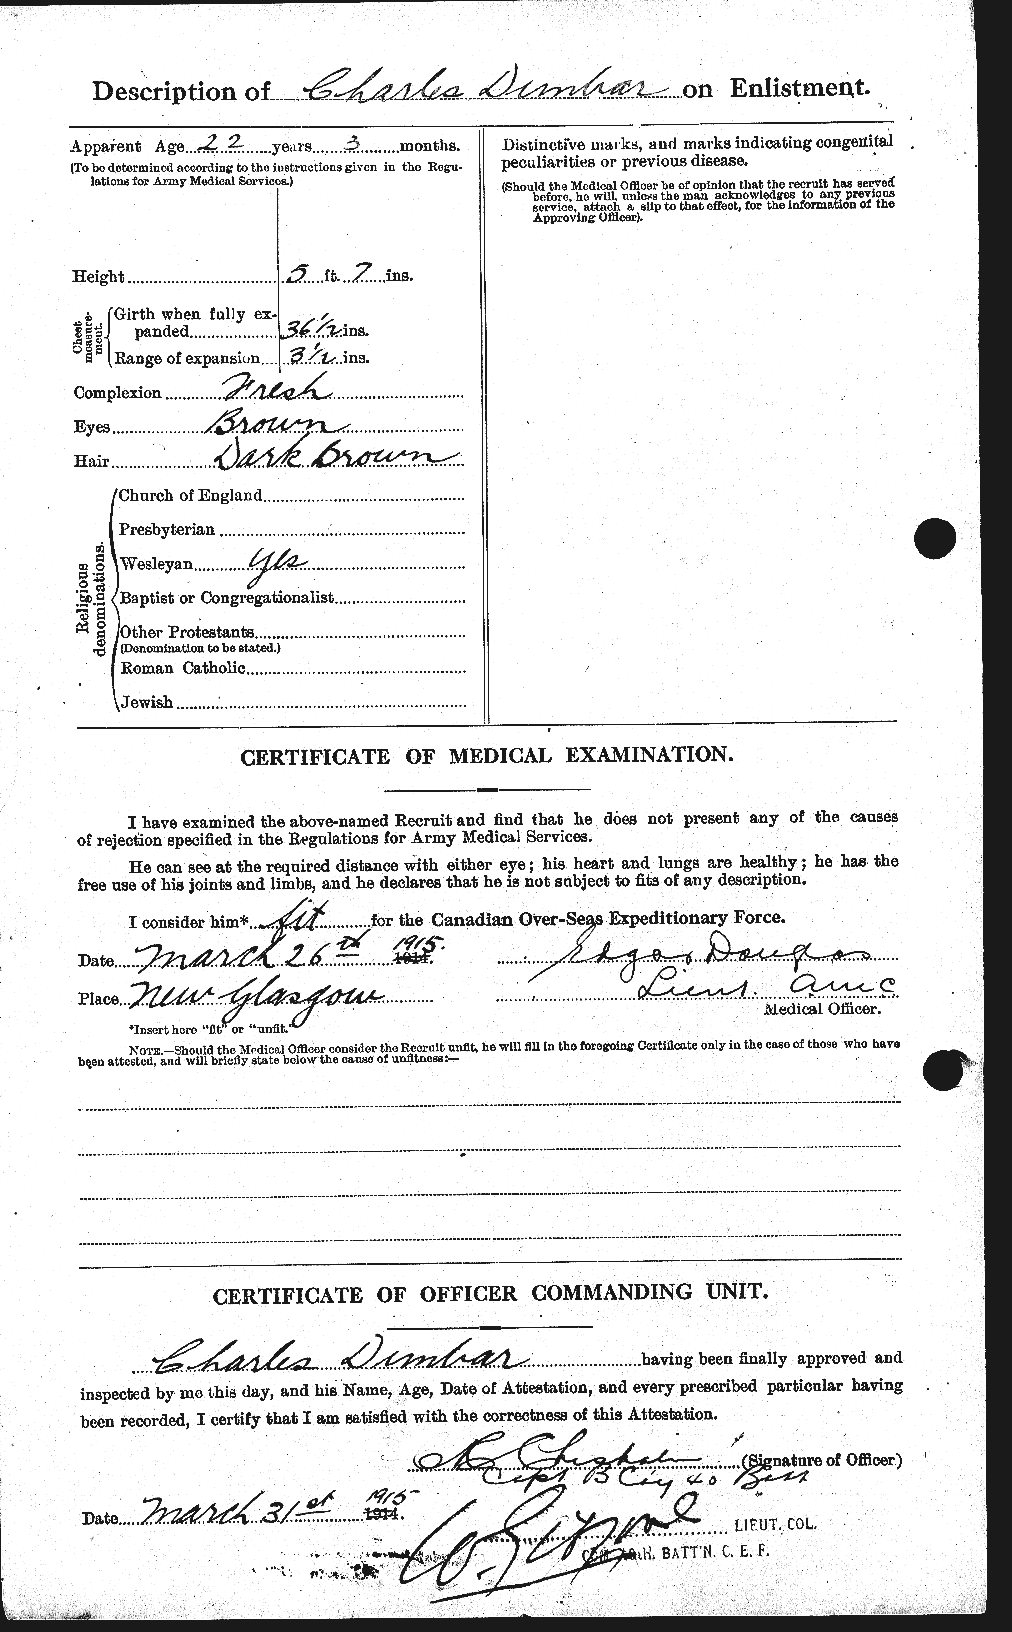 Dossiers du Personnel de la Première Guerre mondiale - CEC 301469b